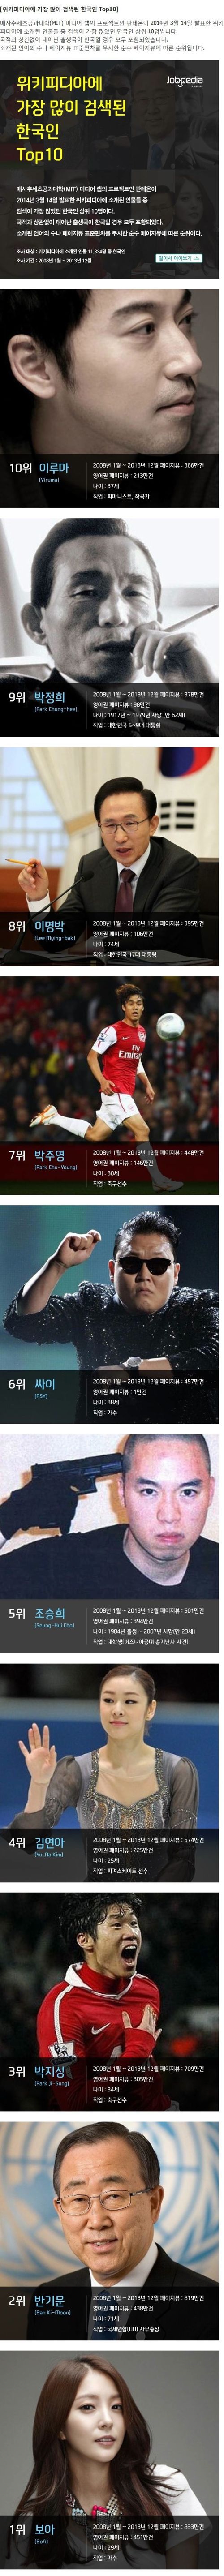 위키피디아에 가장 많이 검색된 한국인 Top10